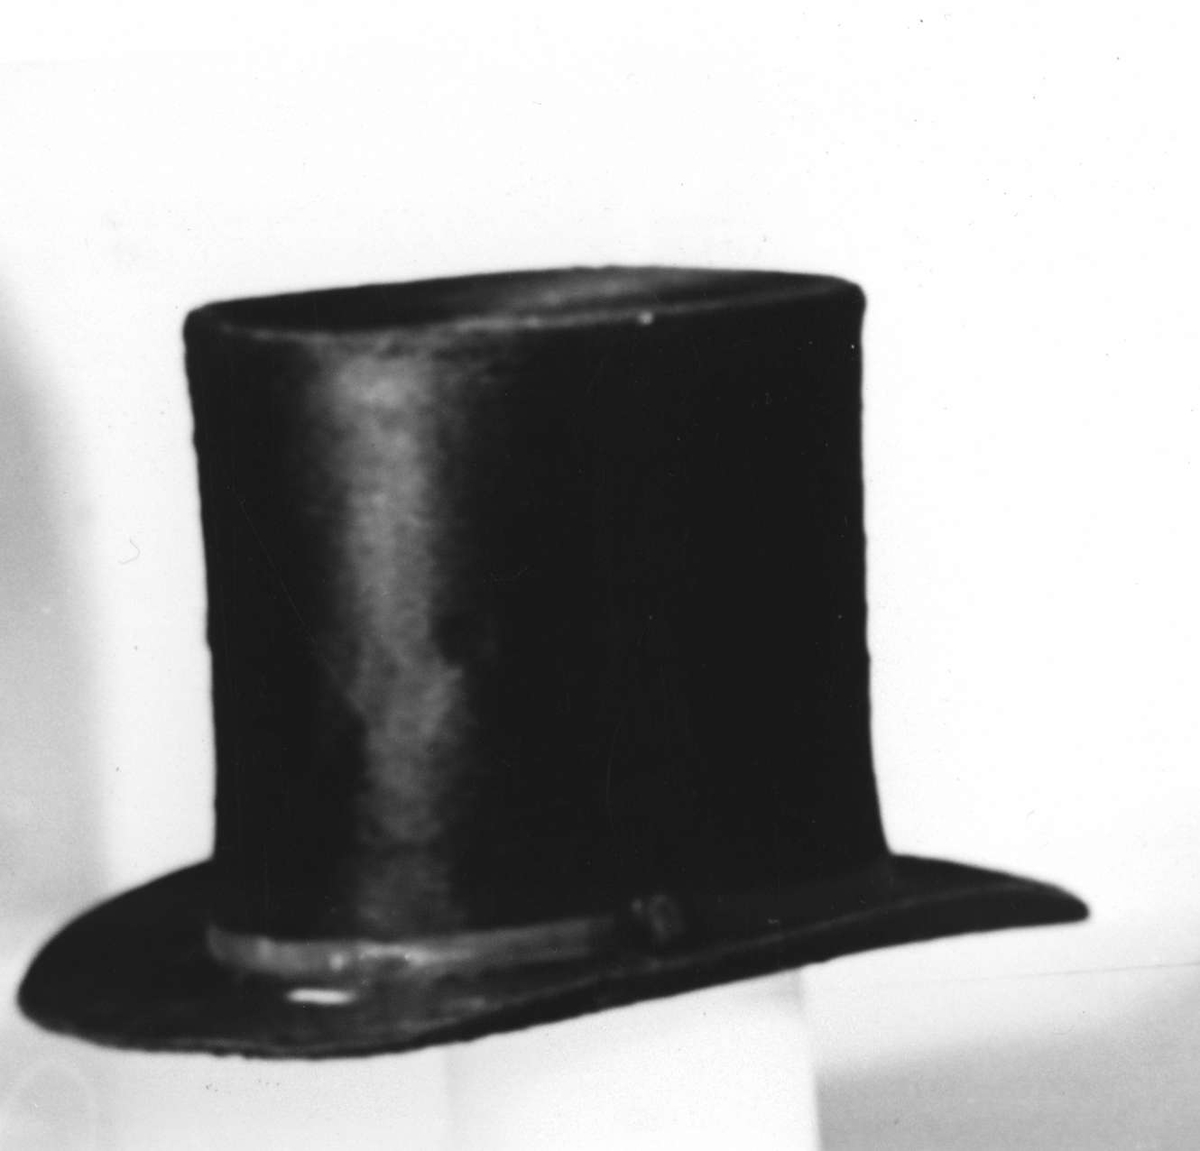 Hög hatt av svart långhårig felb. Runt brättet ripsband med svartlackerat spänne. Fodrad med veckad vit papp med påklistrad etikett med text: N G Ögren. Till hatten hör en ask (UM08649b).